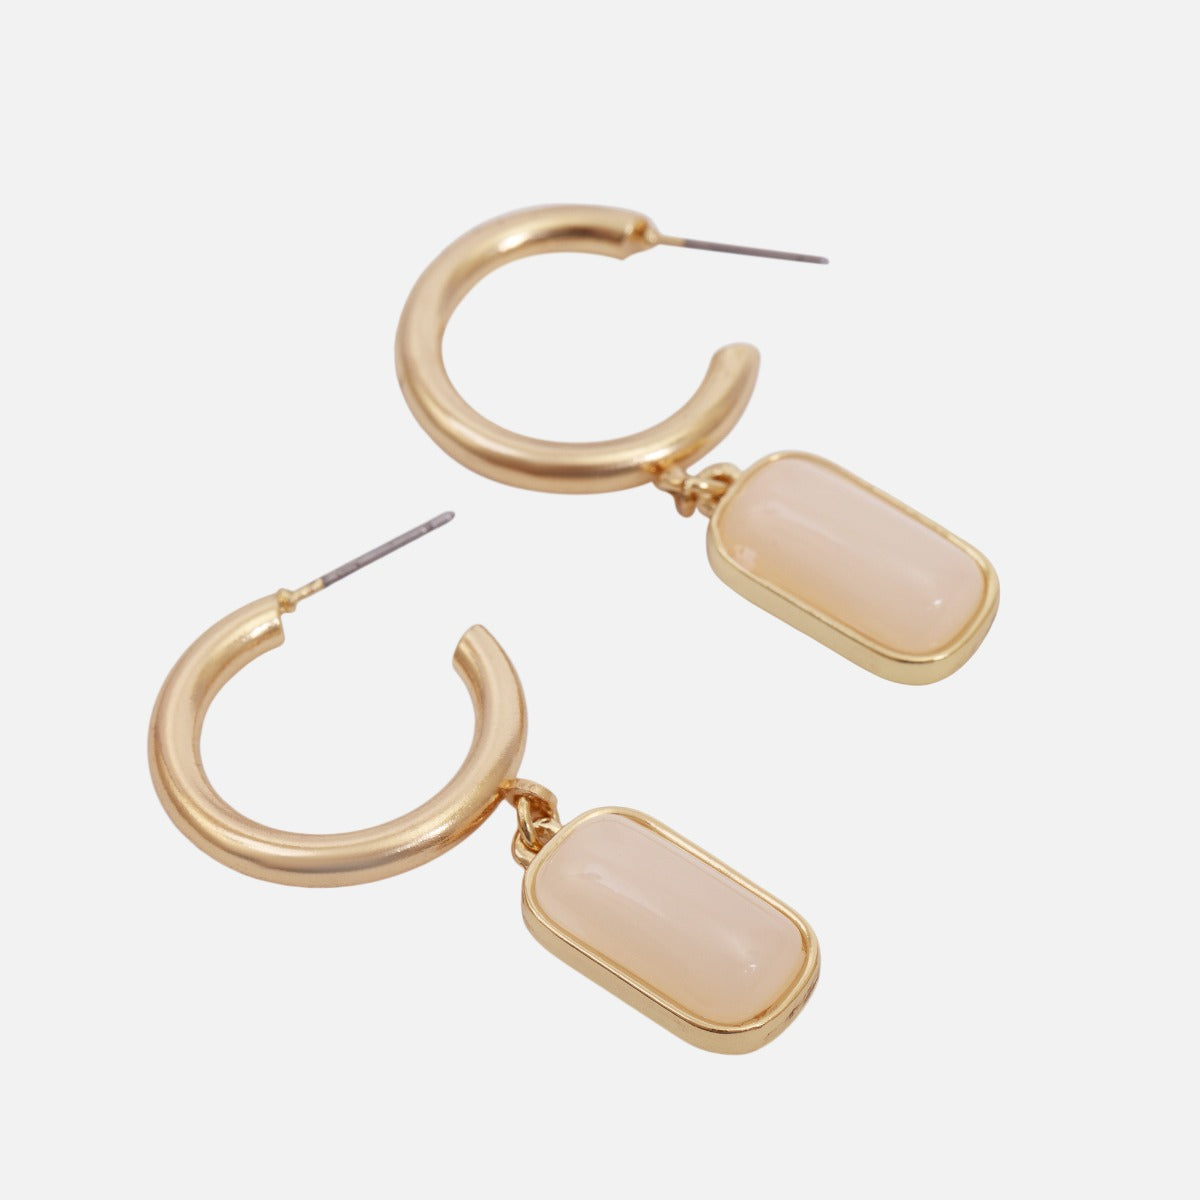 Duo de boucles d'oreilles dorées avec pendentifs différents